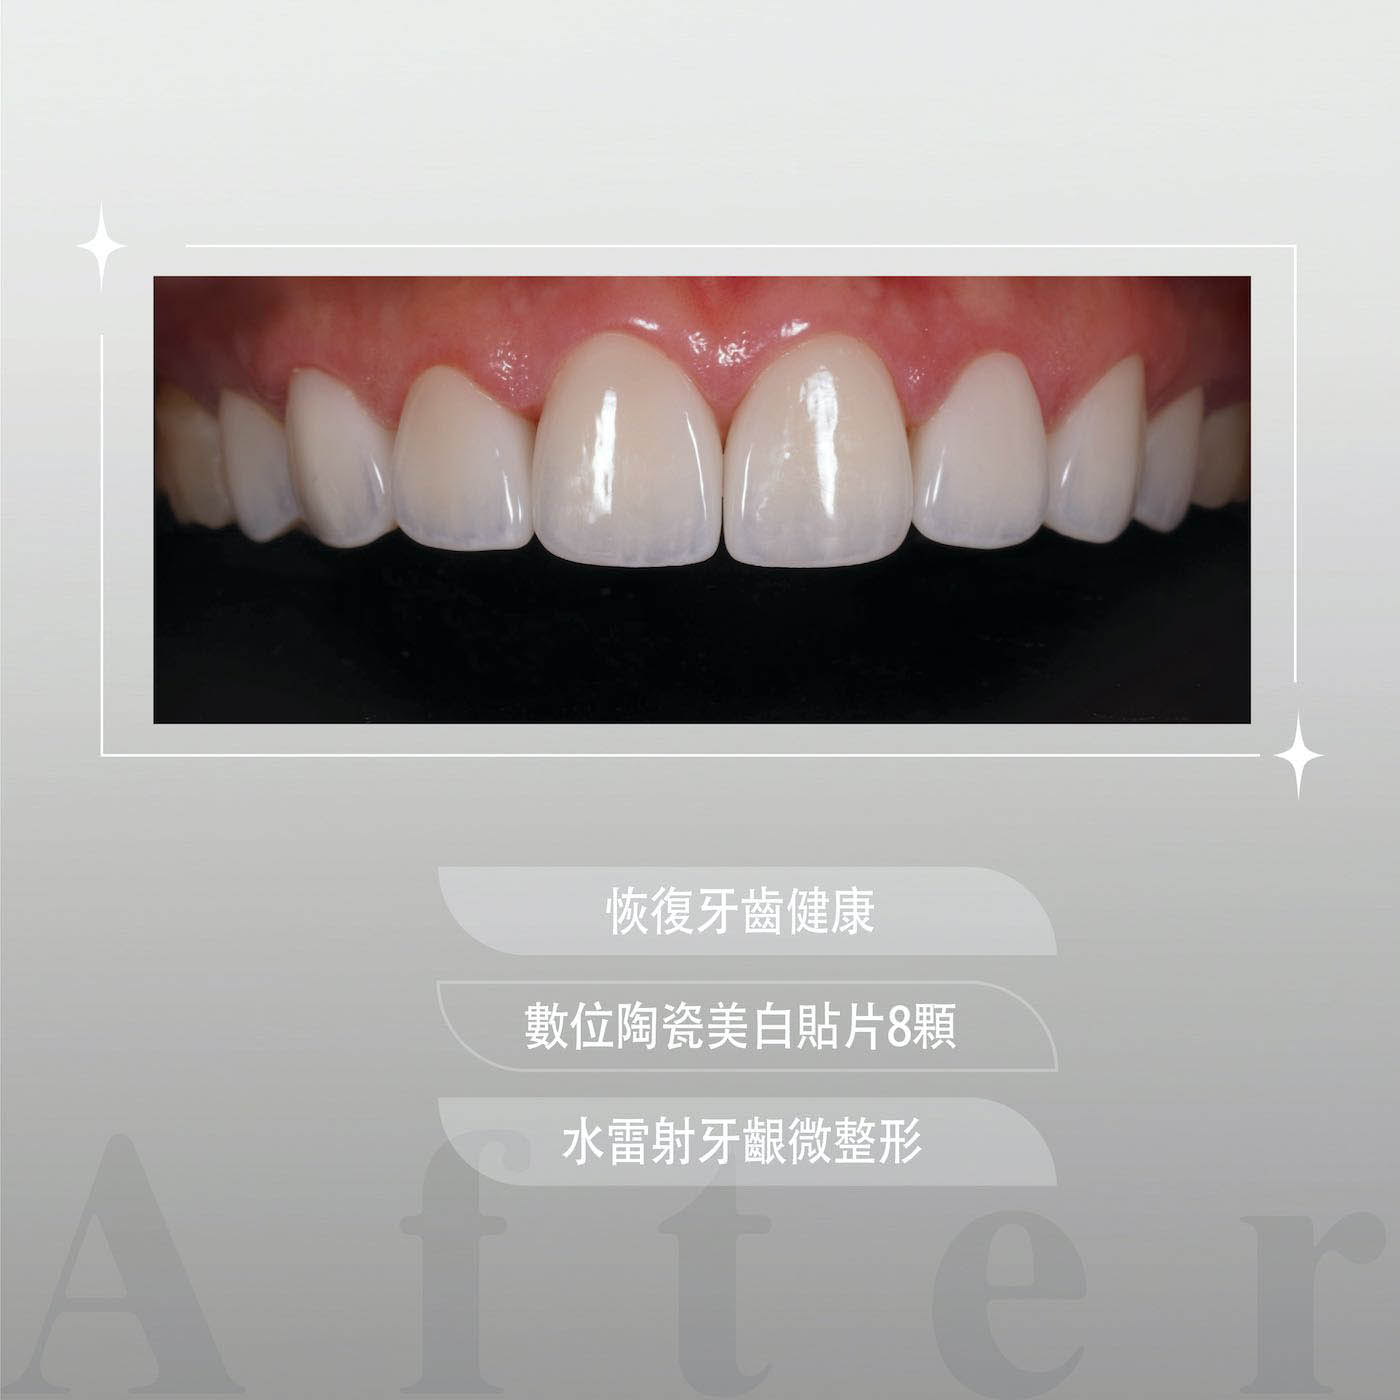 療程後上排牙齒外觀，以8顆陶瓷貼片搭配水雷射牙齦微整形，一次完成牙齒美白、重建微笑曲線並恢復牙齒健康